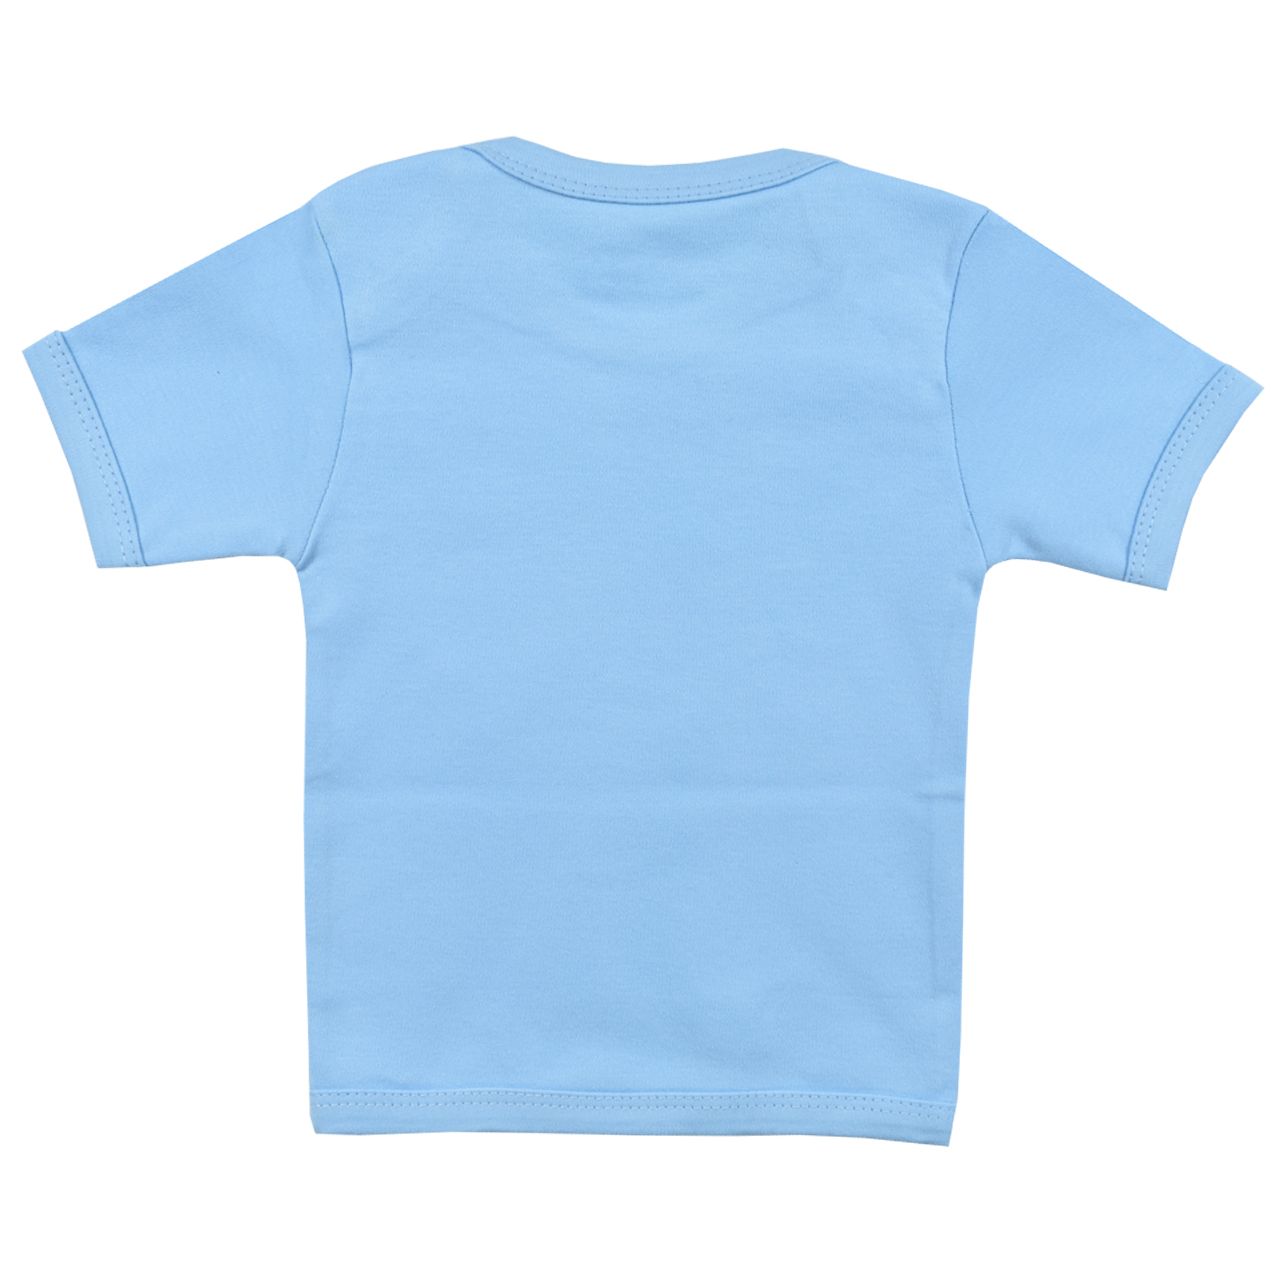 تی شرت آستین کوتاه نوزادی اسپیکو کد 300 -3 بسته دو عددی -  - 2